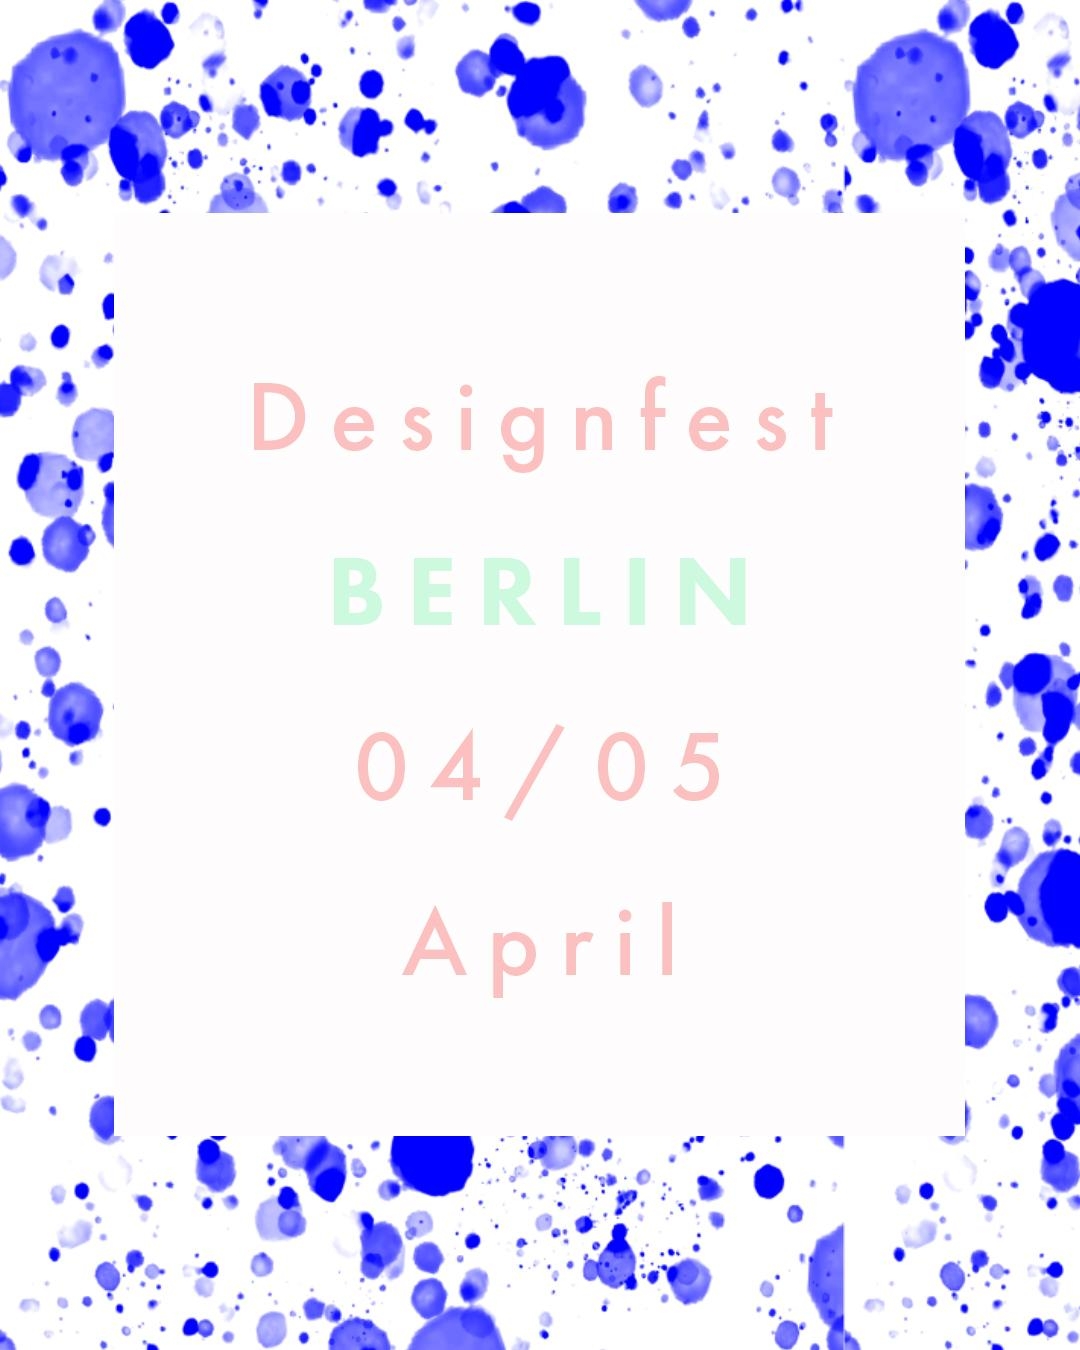 Weiter geht's in unserer schönen Hauptstadt Berlin ❤️ #designfest #berlin